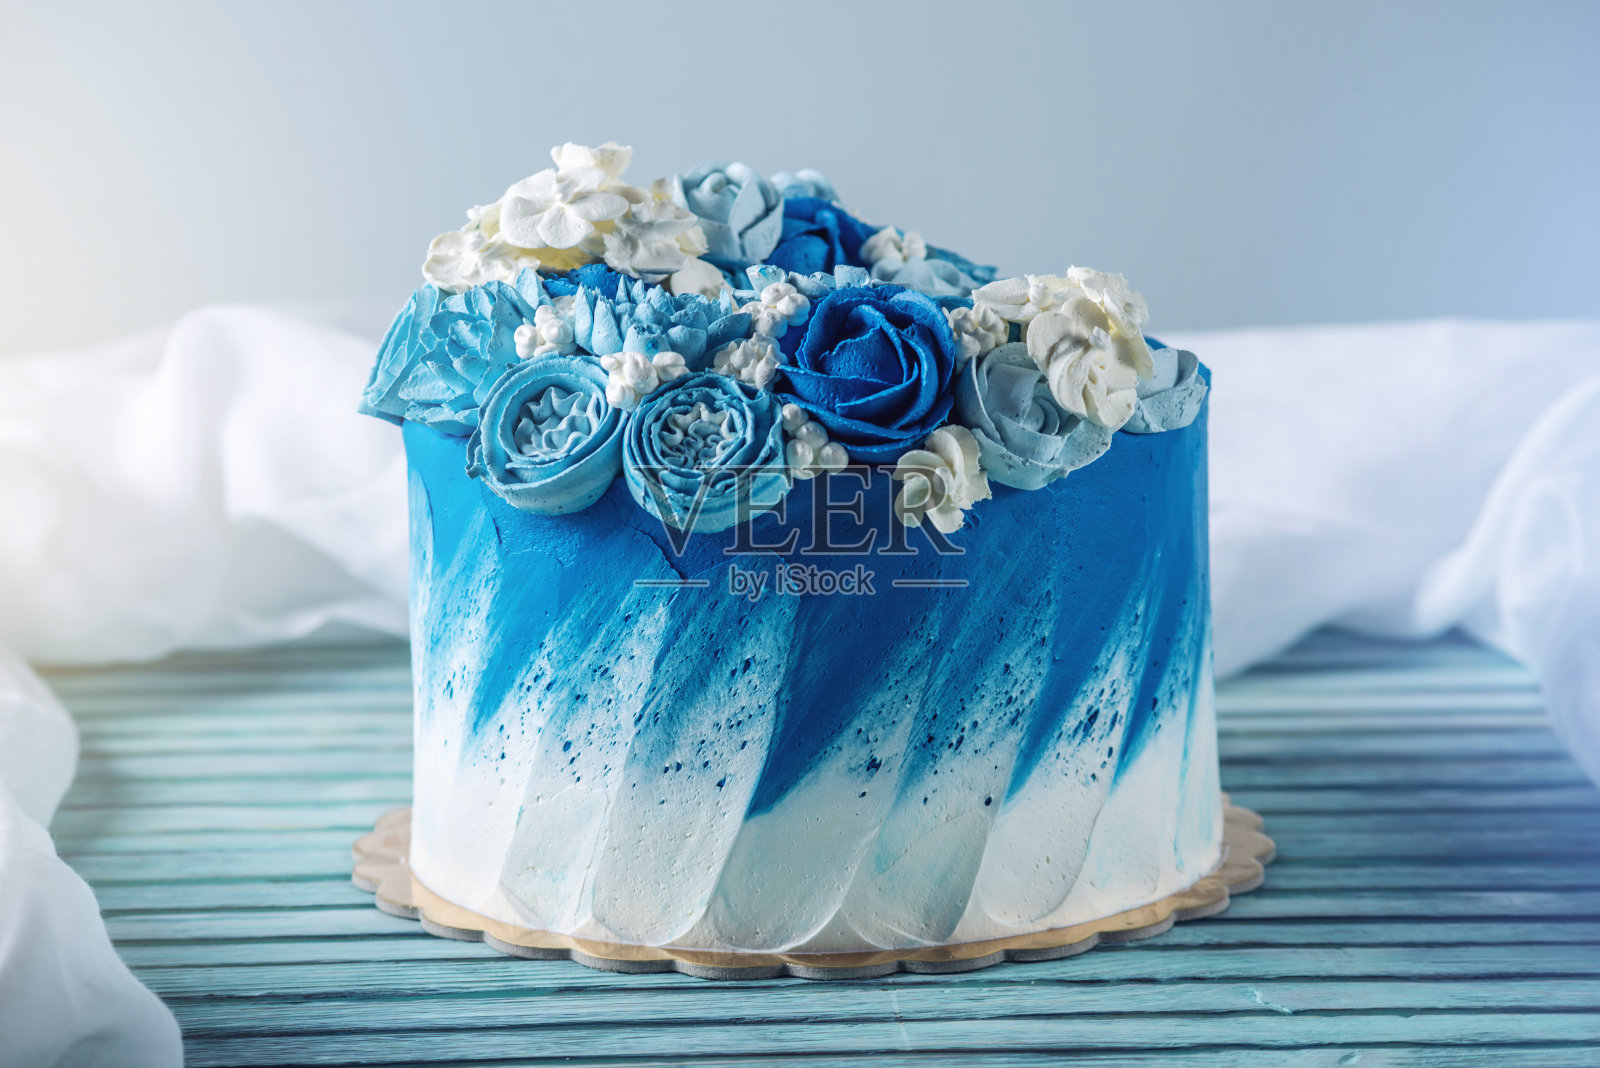 漂亮的蓝色婚礼蛋糕装饰白色的奶油花。生日甜点的概念照片摄影图片